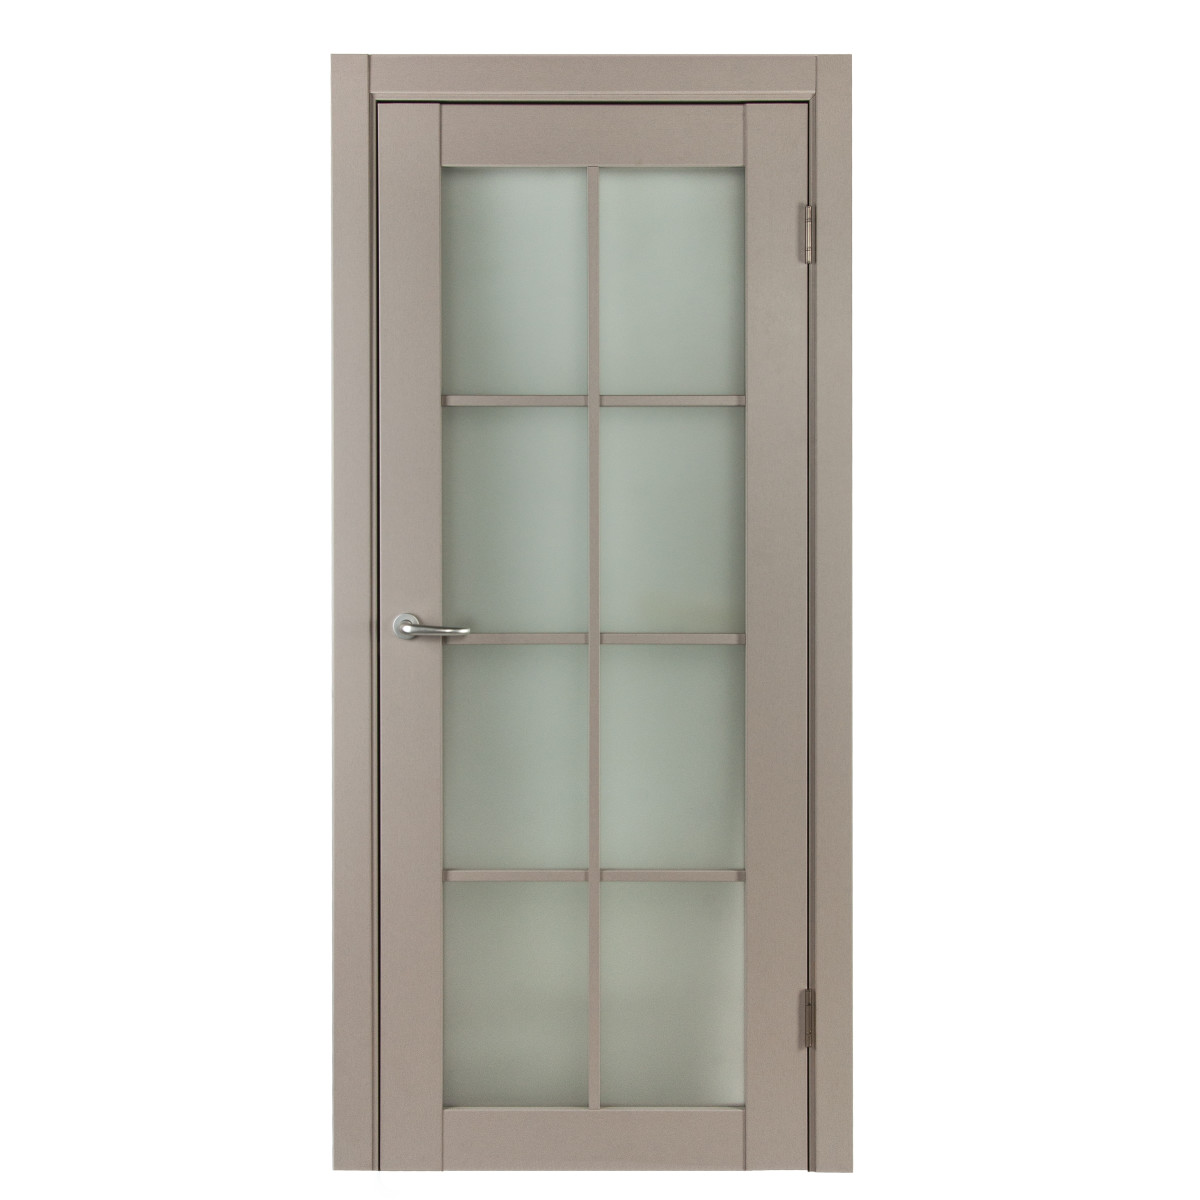 Дверь межкомнатная остеклённая с фурнитурой Пьемонт 90х200 см, Hardflex, цвет платина светлая